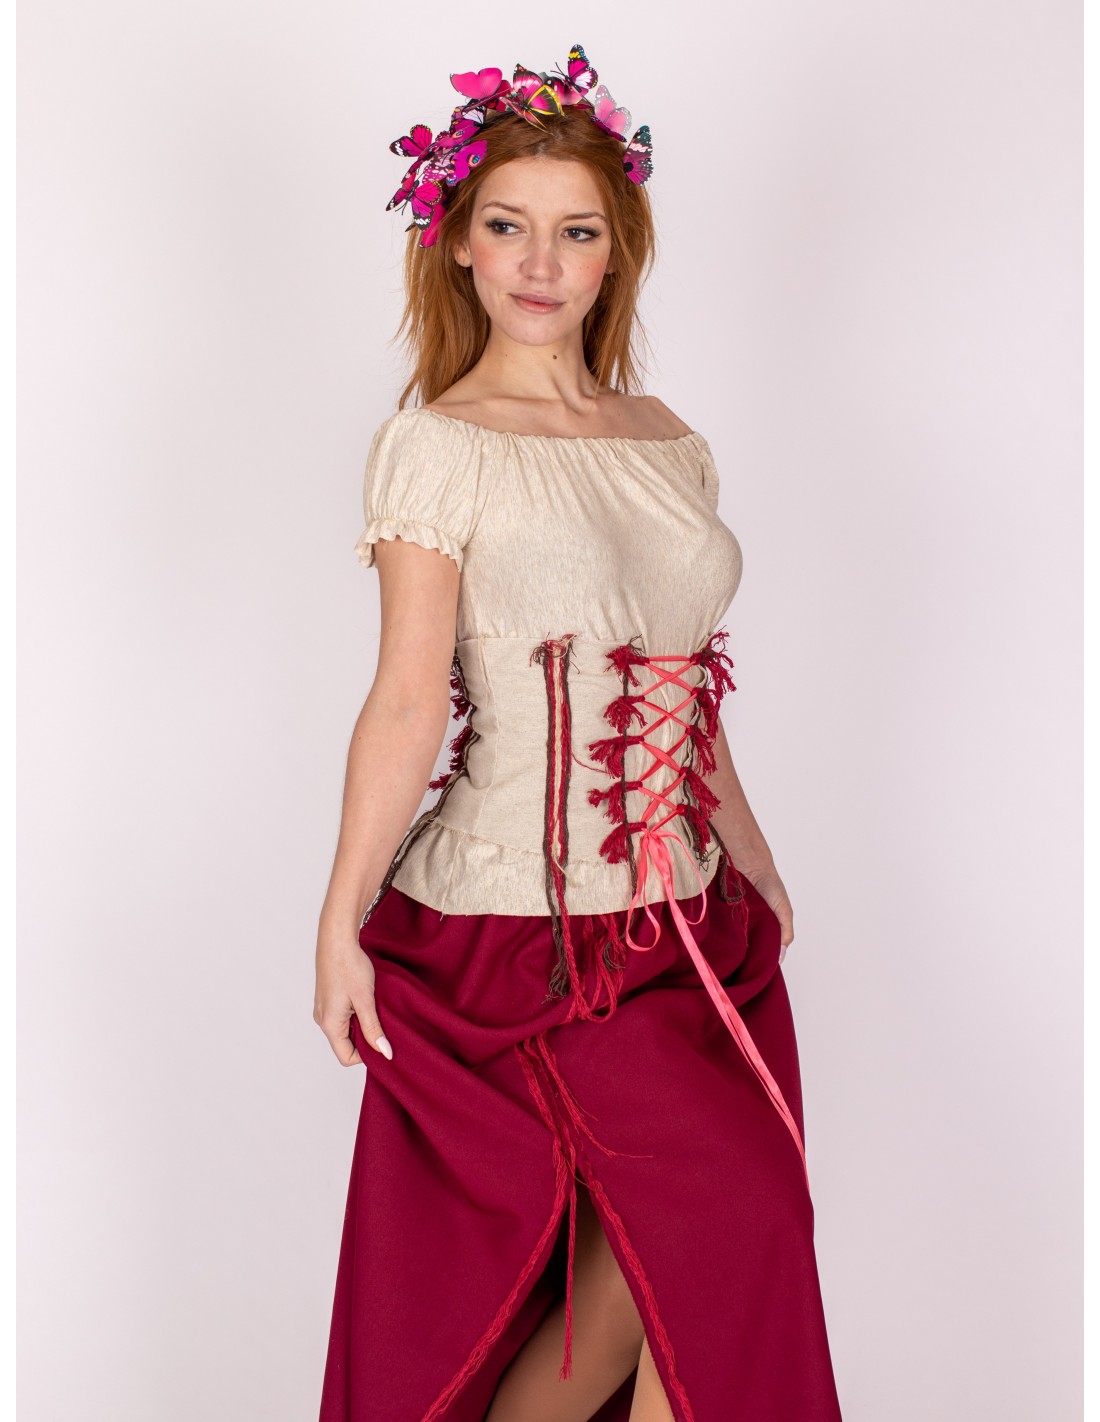 En cualquier momento cortar Espinoso Tabernera medieval o disfraz de mesonera medieval con corset medieval